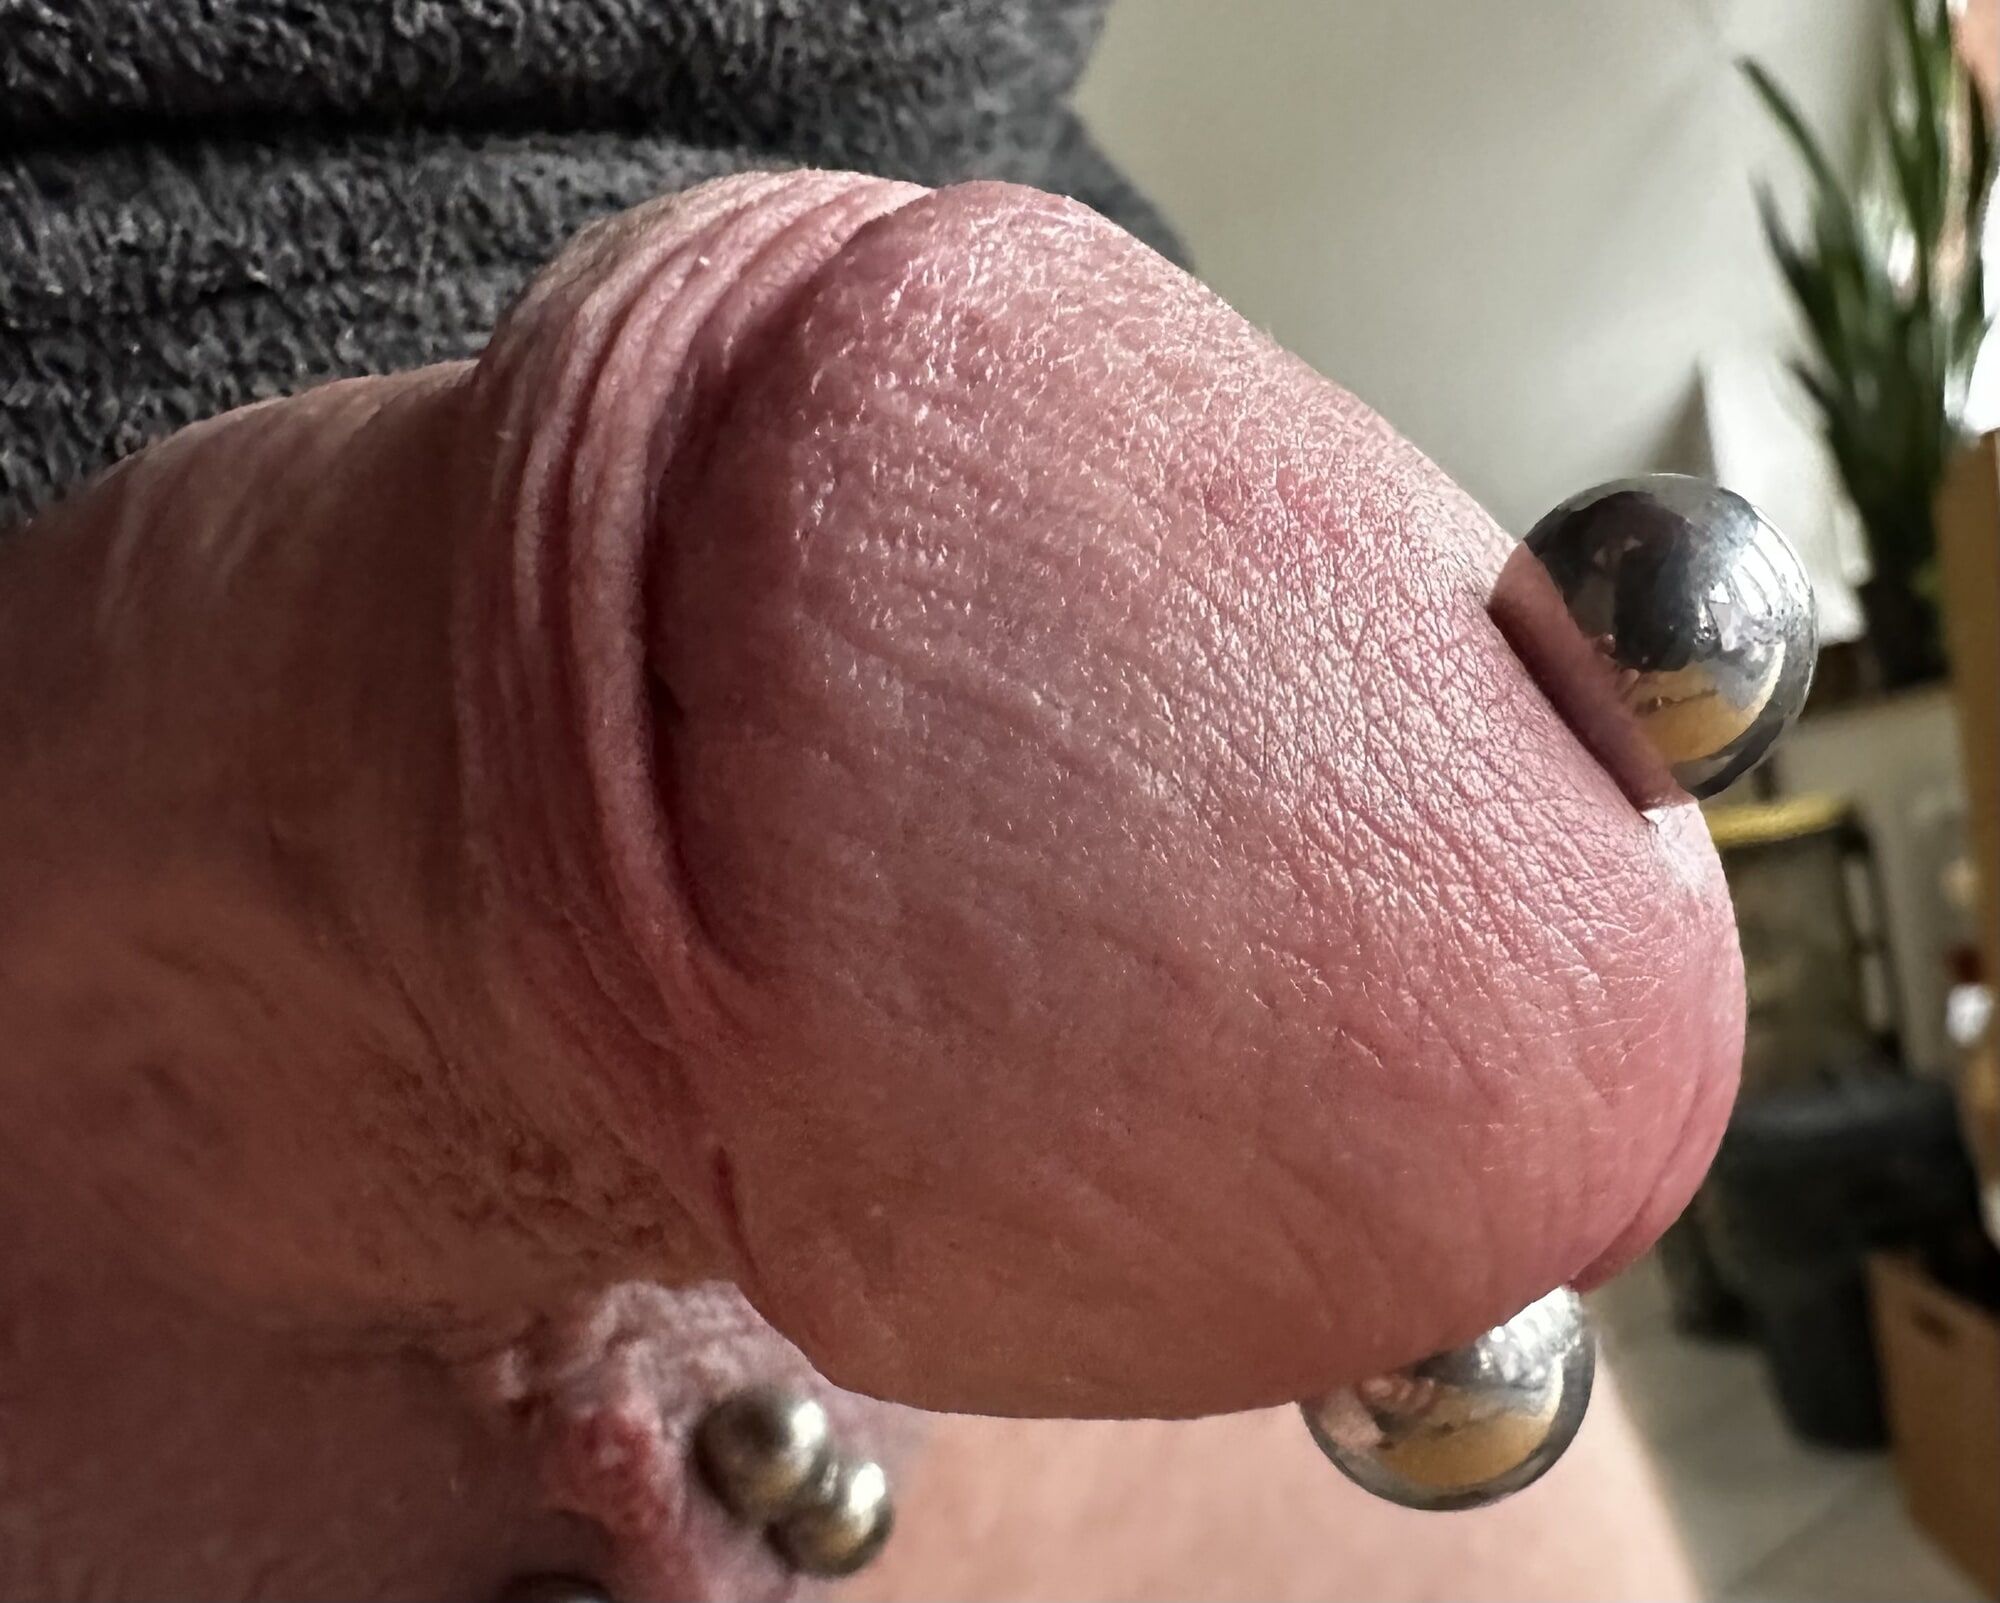 Mein Penis #2